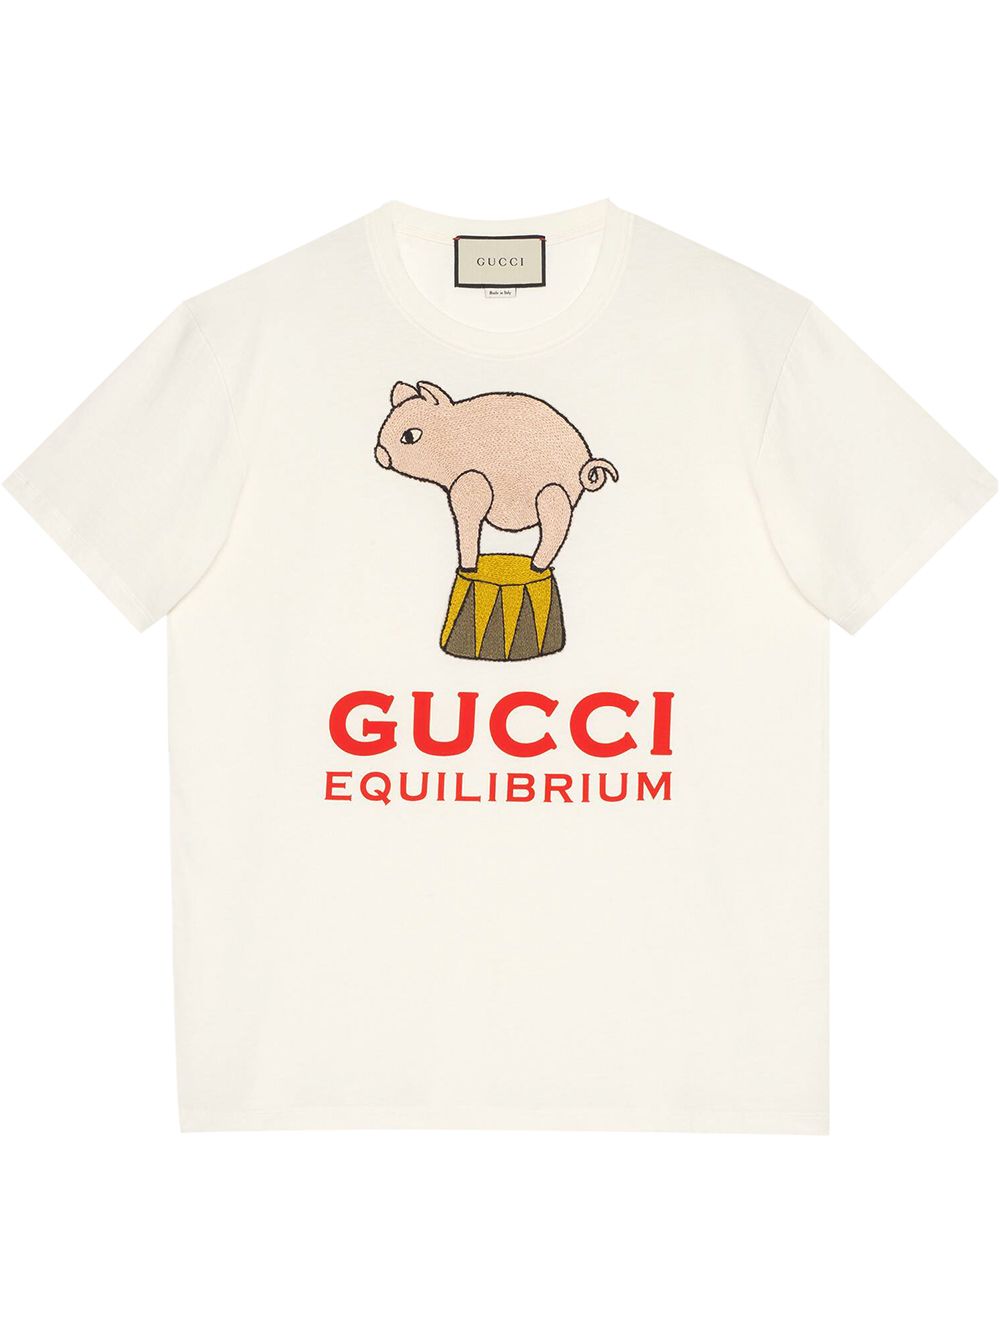 фото Gucci футболка оверсайз gucci equilibrium